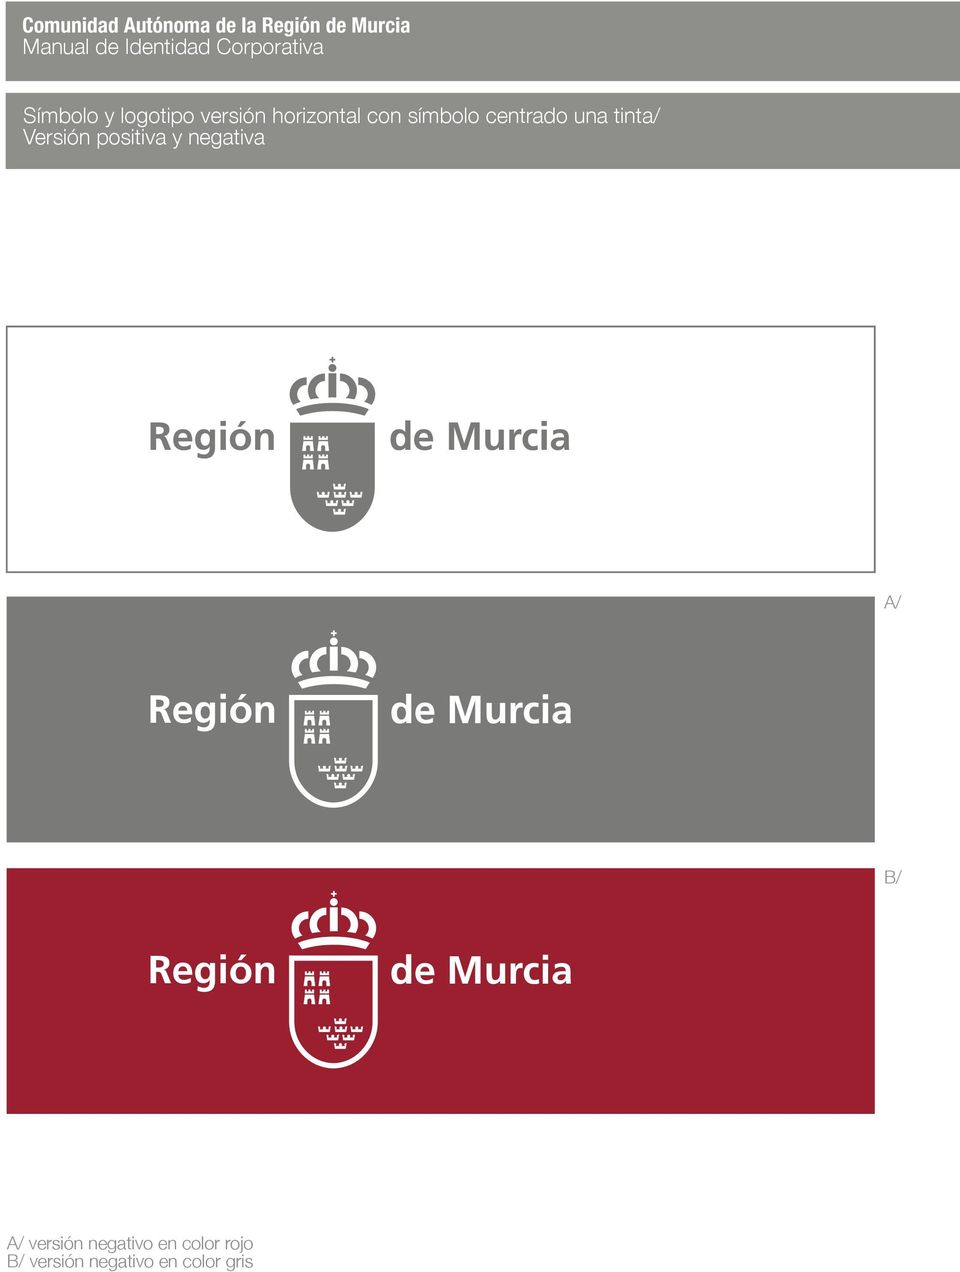 Versión positiva y negativa Región de Murcia A/ Región de Murcia B/